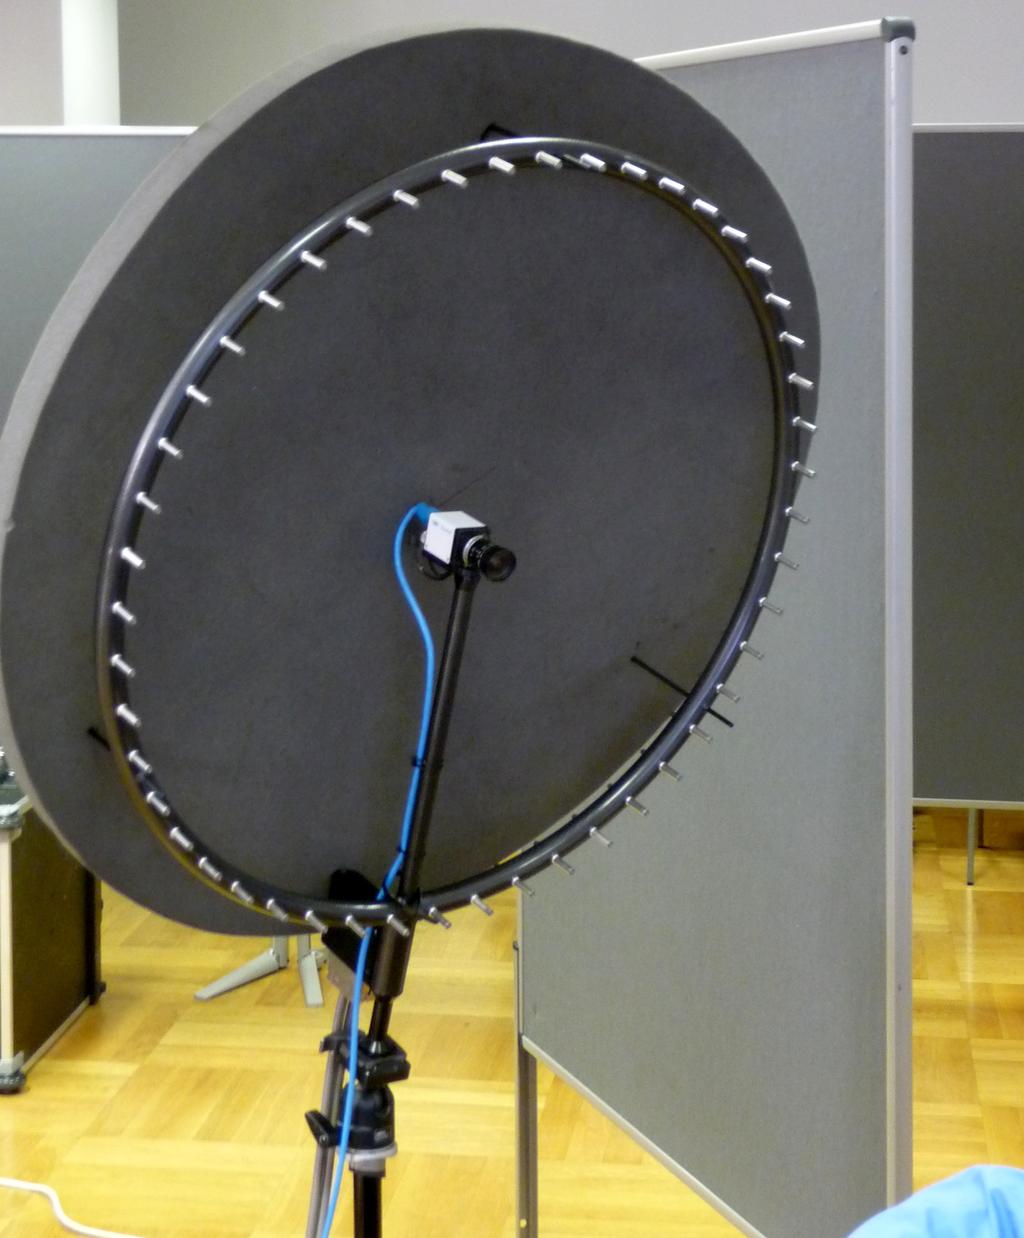 Noise emission measurements Acoustic Camera (gfai tech